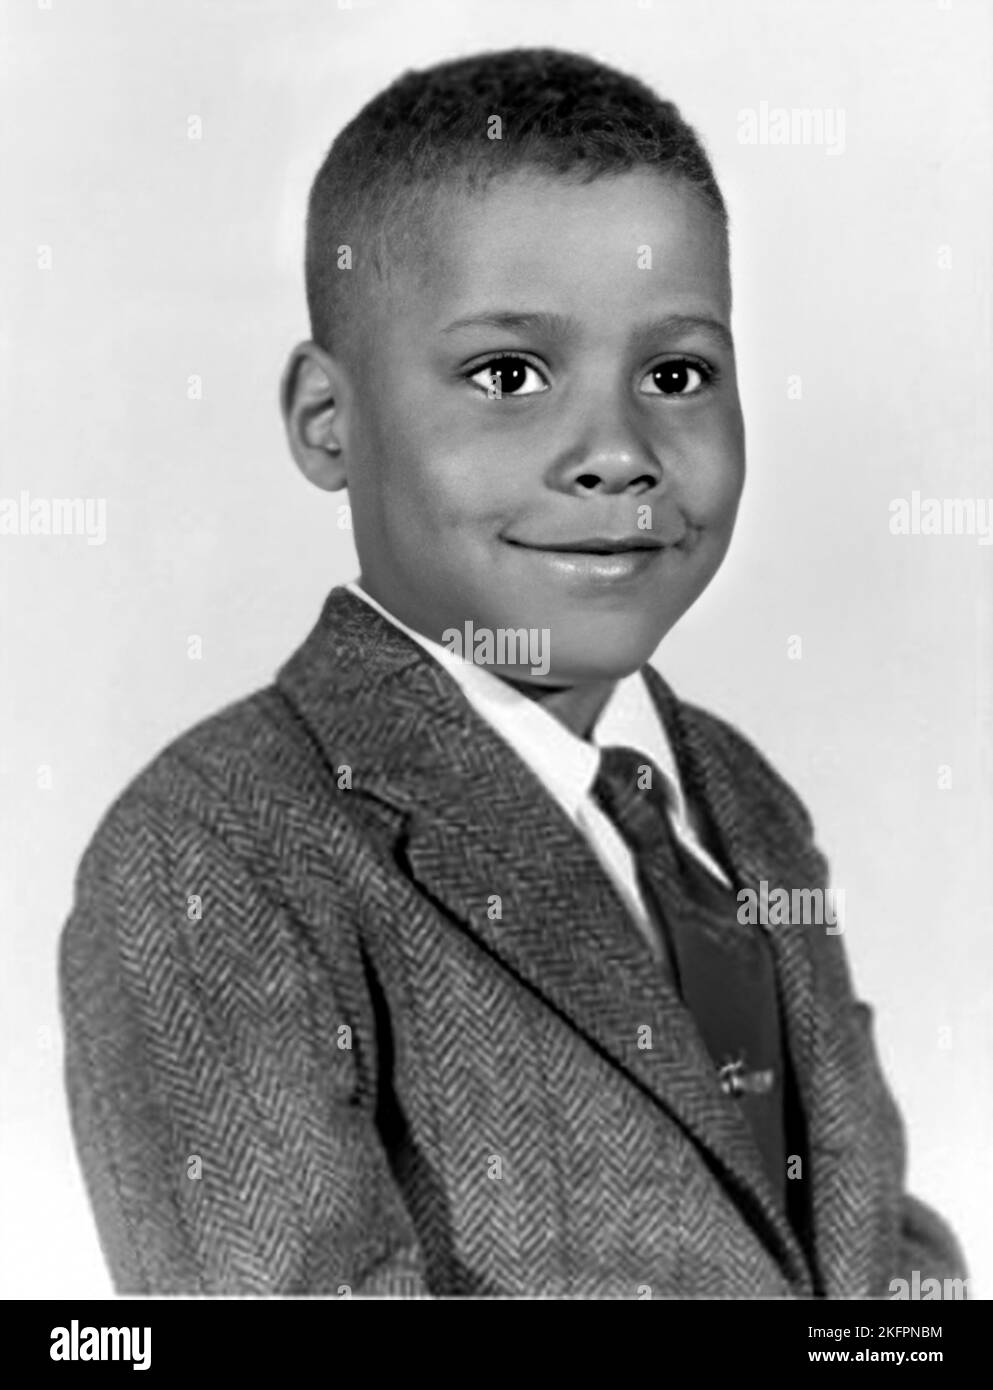 1962 Ca , USA : der amerikanische Schauspieler BILL NUNN ( 1953 - 2016 ), 9 Jahre alt, Foto aus dem High School Yearbook . Unbekannter Fotograf .- GESCHICHTE - FOTO STORICHE - ATTORE - FILM - KINO - personalità da giovane giovani - Persönlichkeit Persönlichkeiten als jung - Baby - PORTRÄT - RITRATTO - TEENAGER - KINDER - KIND - BAMBINO - BAMBINI - KINDHEIT - INFANZIA - Krawatte - cravatta -- - ARCHIVIO GBB Stockfoto